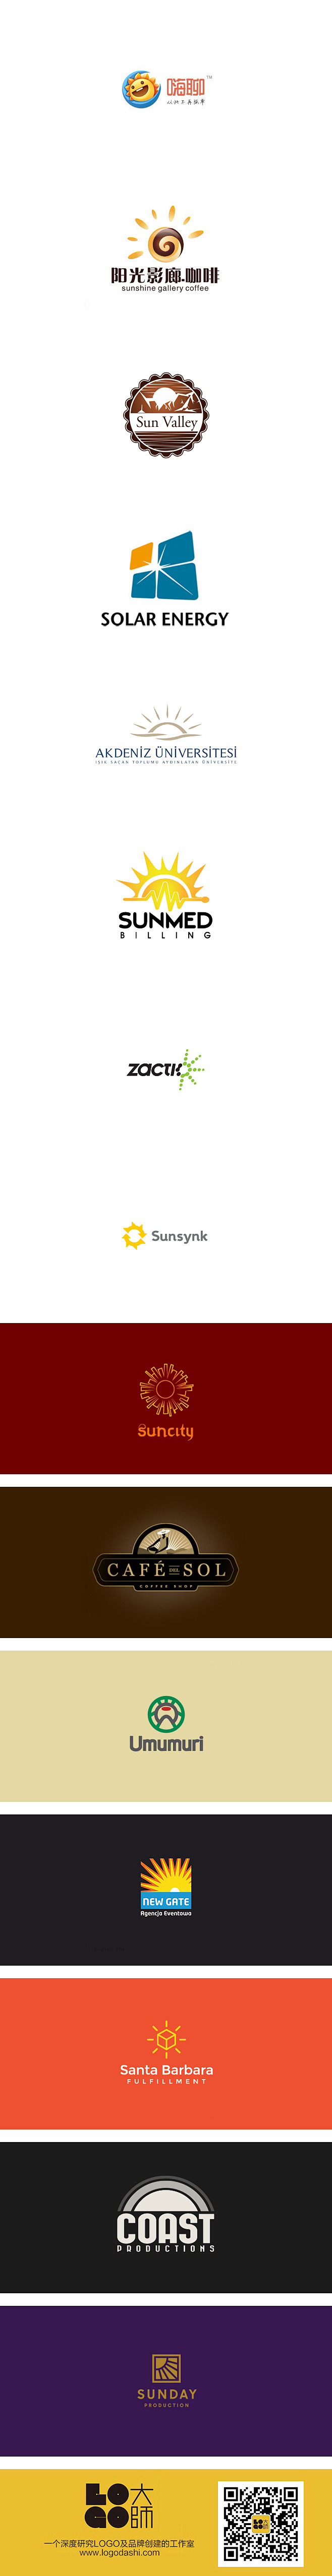 #以太阳为元素logo##logo设计#...